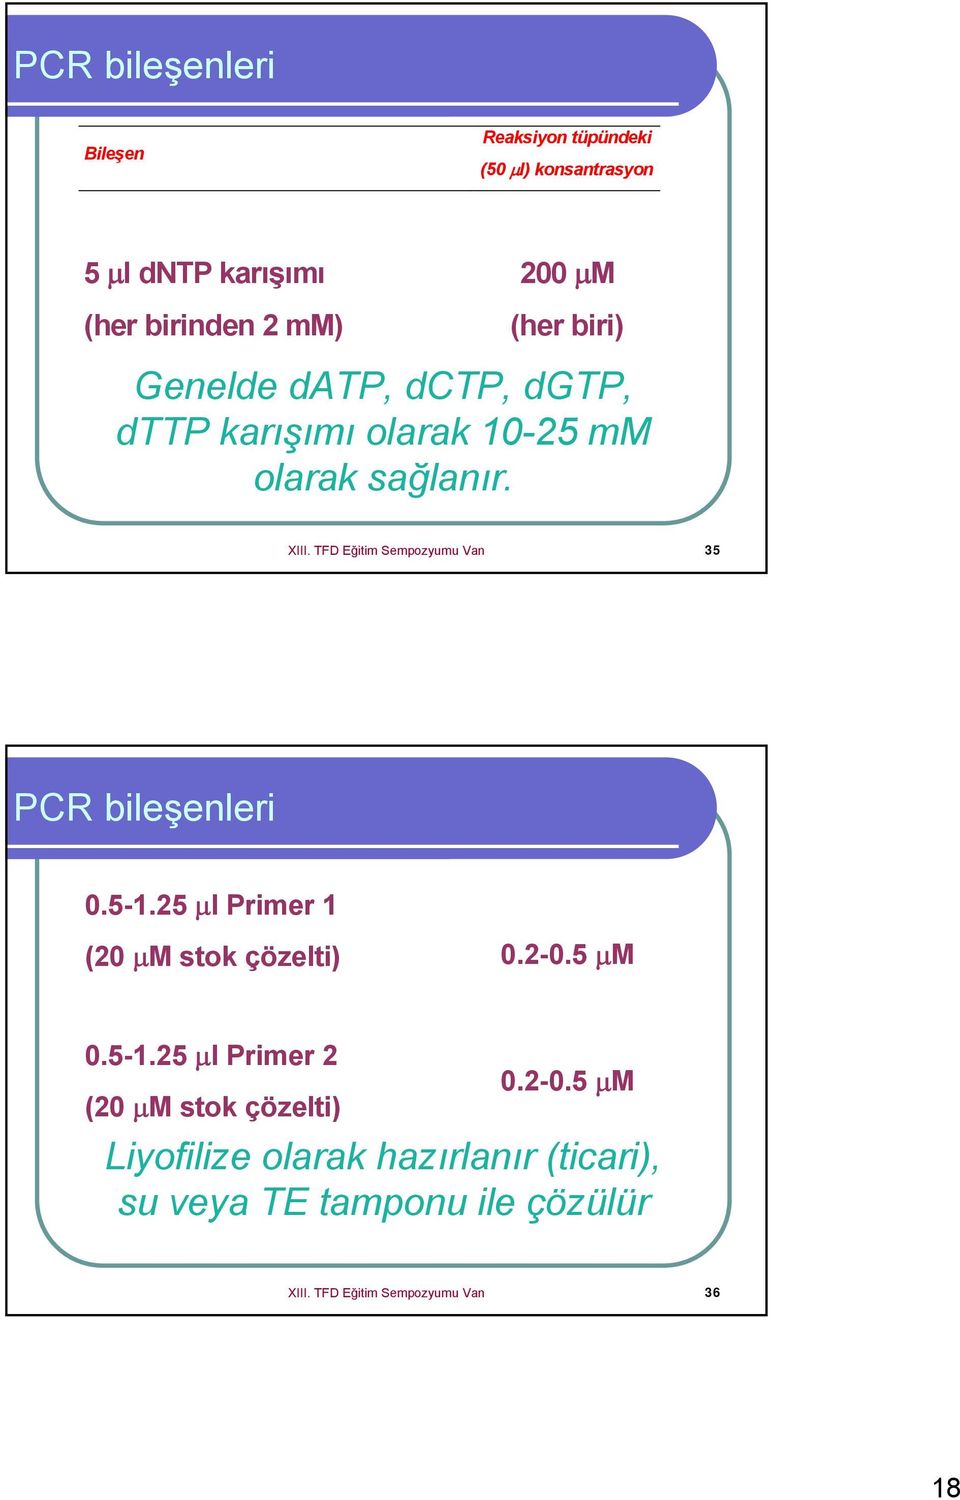 TFD Eğitim Sempozyumu Van 35 PCR bileşenleri 0.5-1.25 μl Primer 1 (20 μm stok çözelti) 0.2-0.5 μm 0.5-1.25 μl Primer 2 (20 μm stok çözelti) 0.